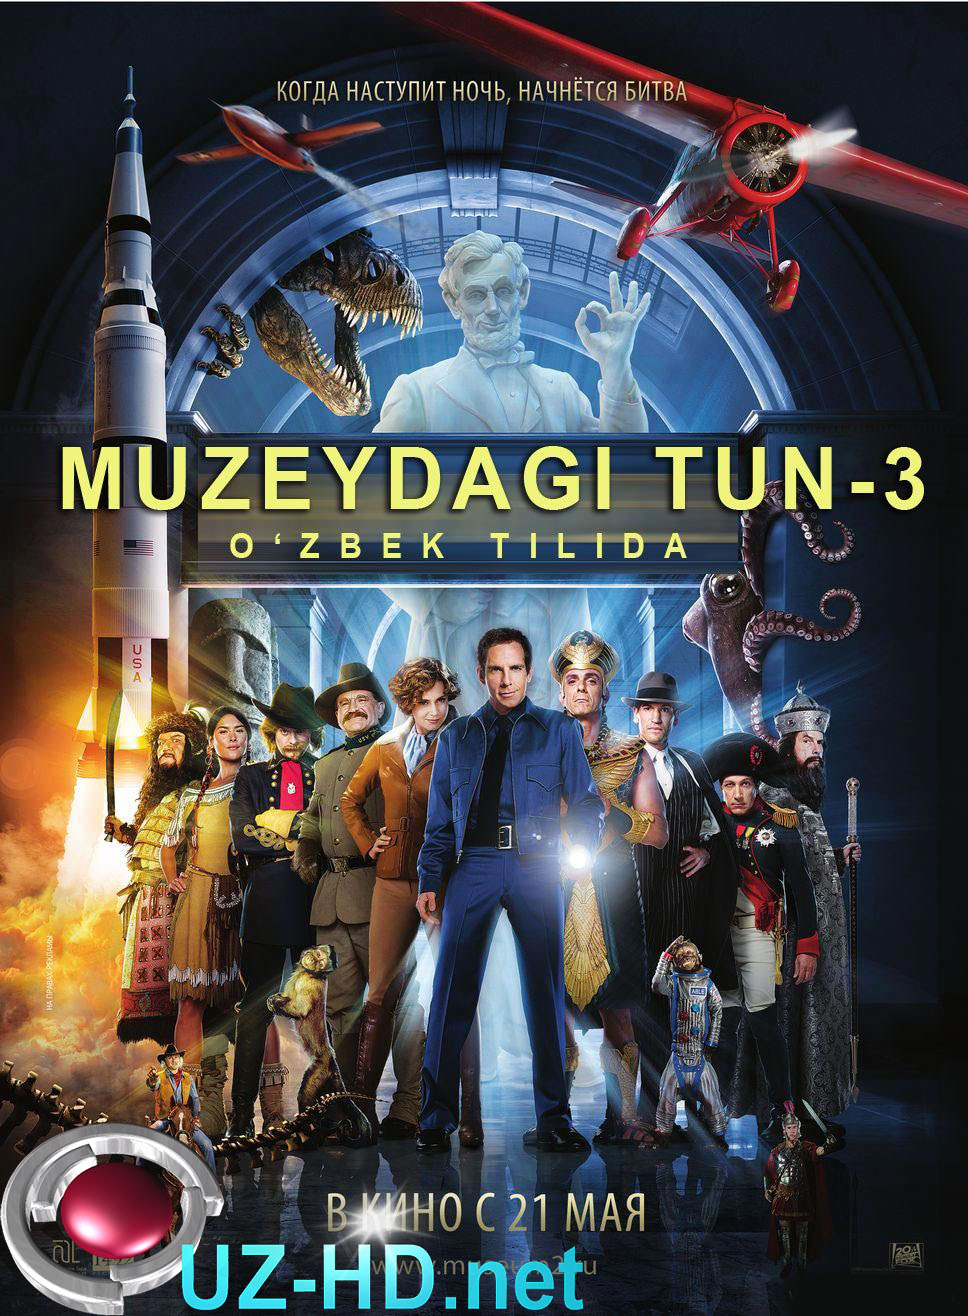 Muzeydagi Tun 3 (O'zbek tilida) - смотреть онлайн